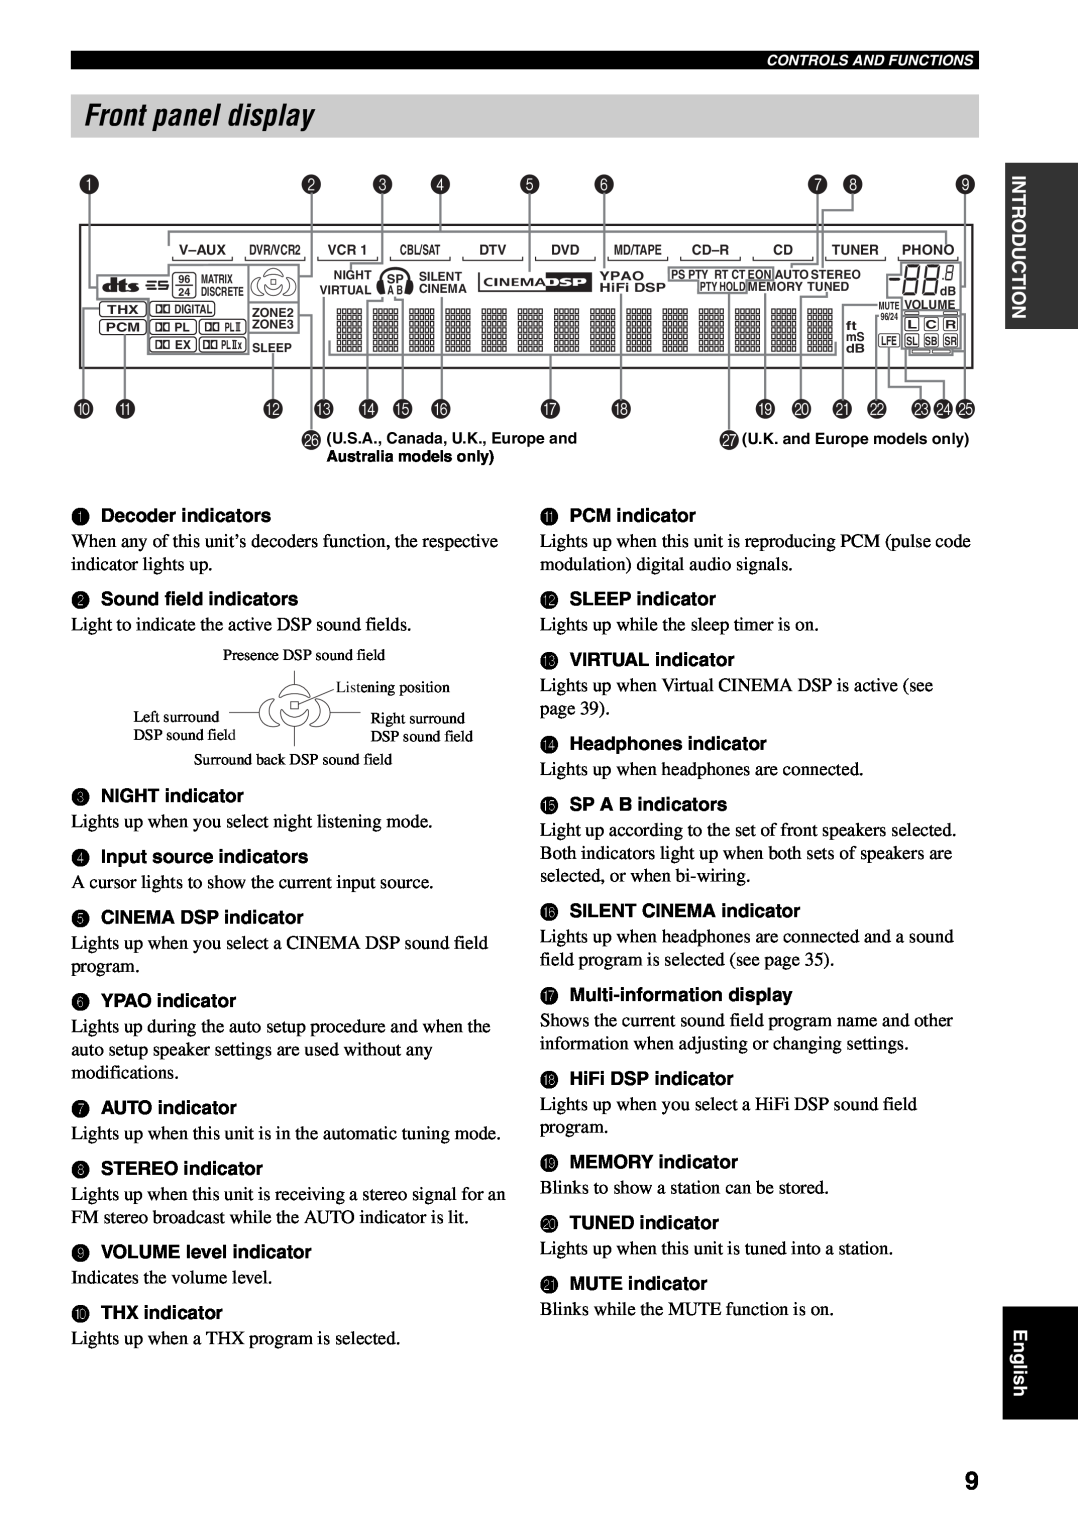 Yamaha RX-V1500 owner manual Front panel display, D E F, I J K L 